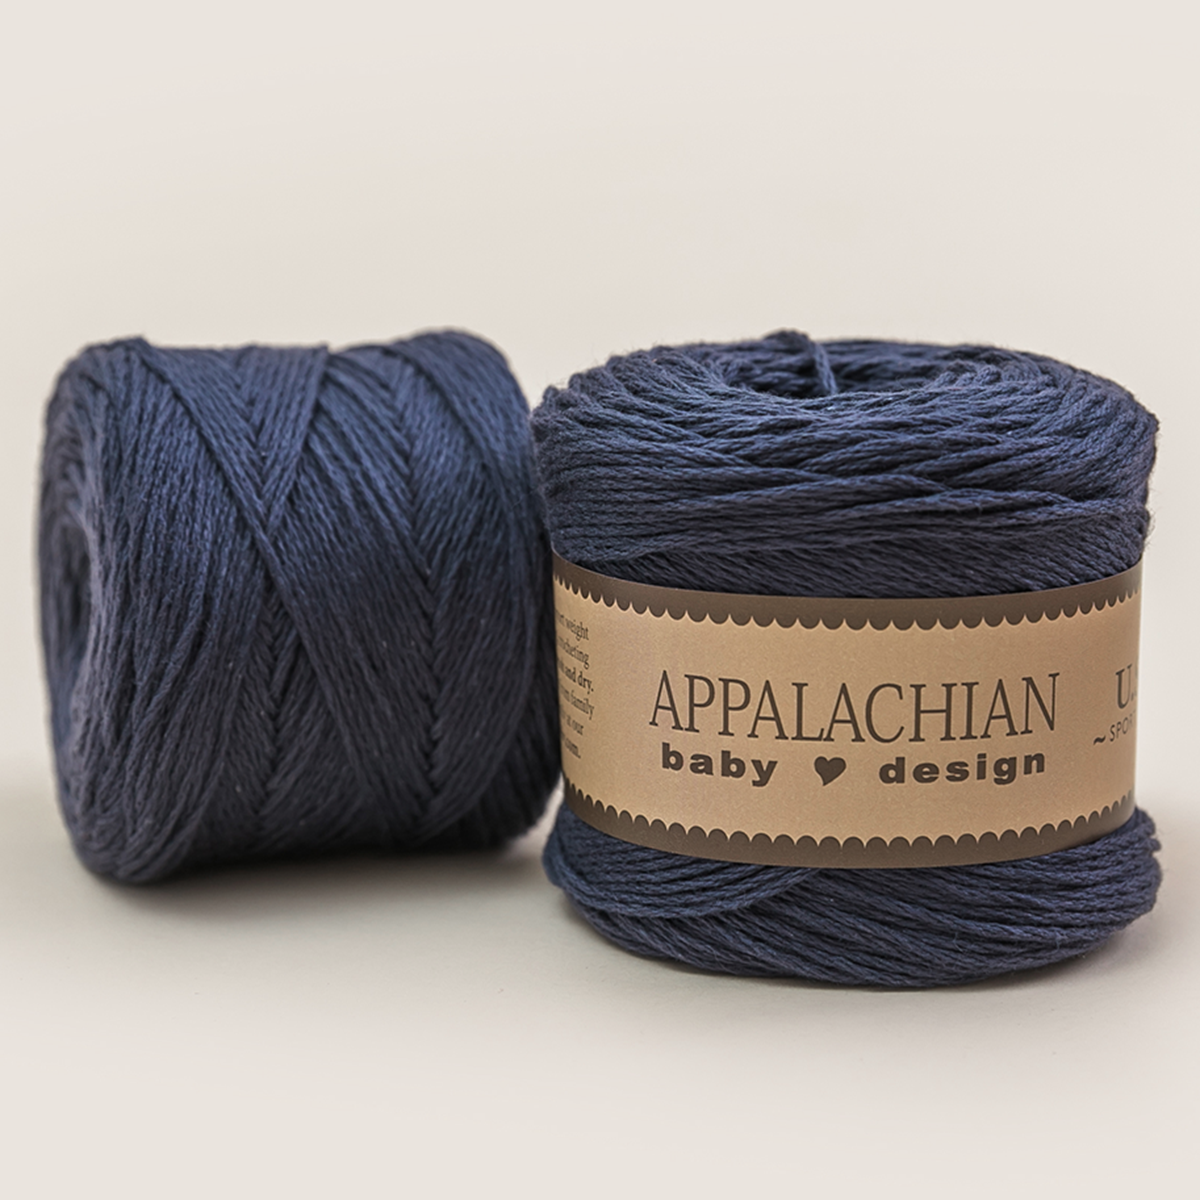 100% Cotton Yarn Organic Combed Yarn For Knitting Wearable